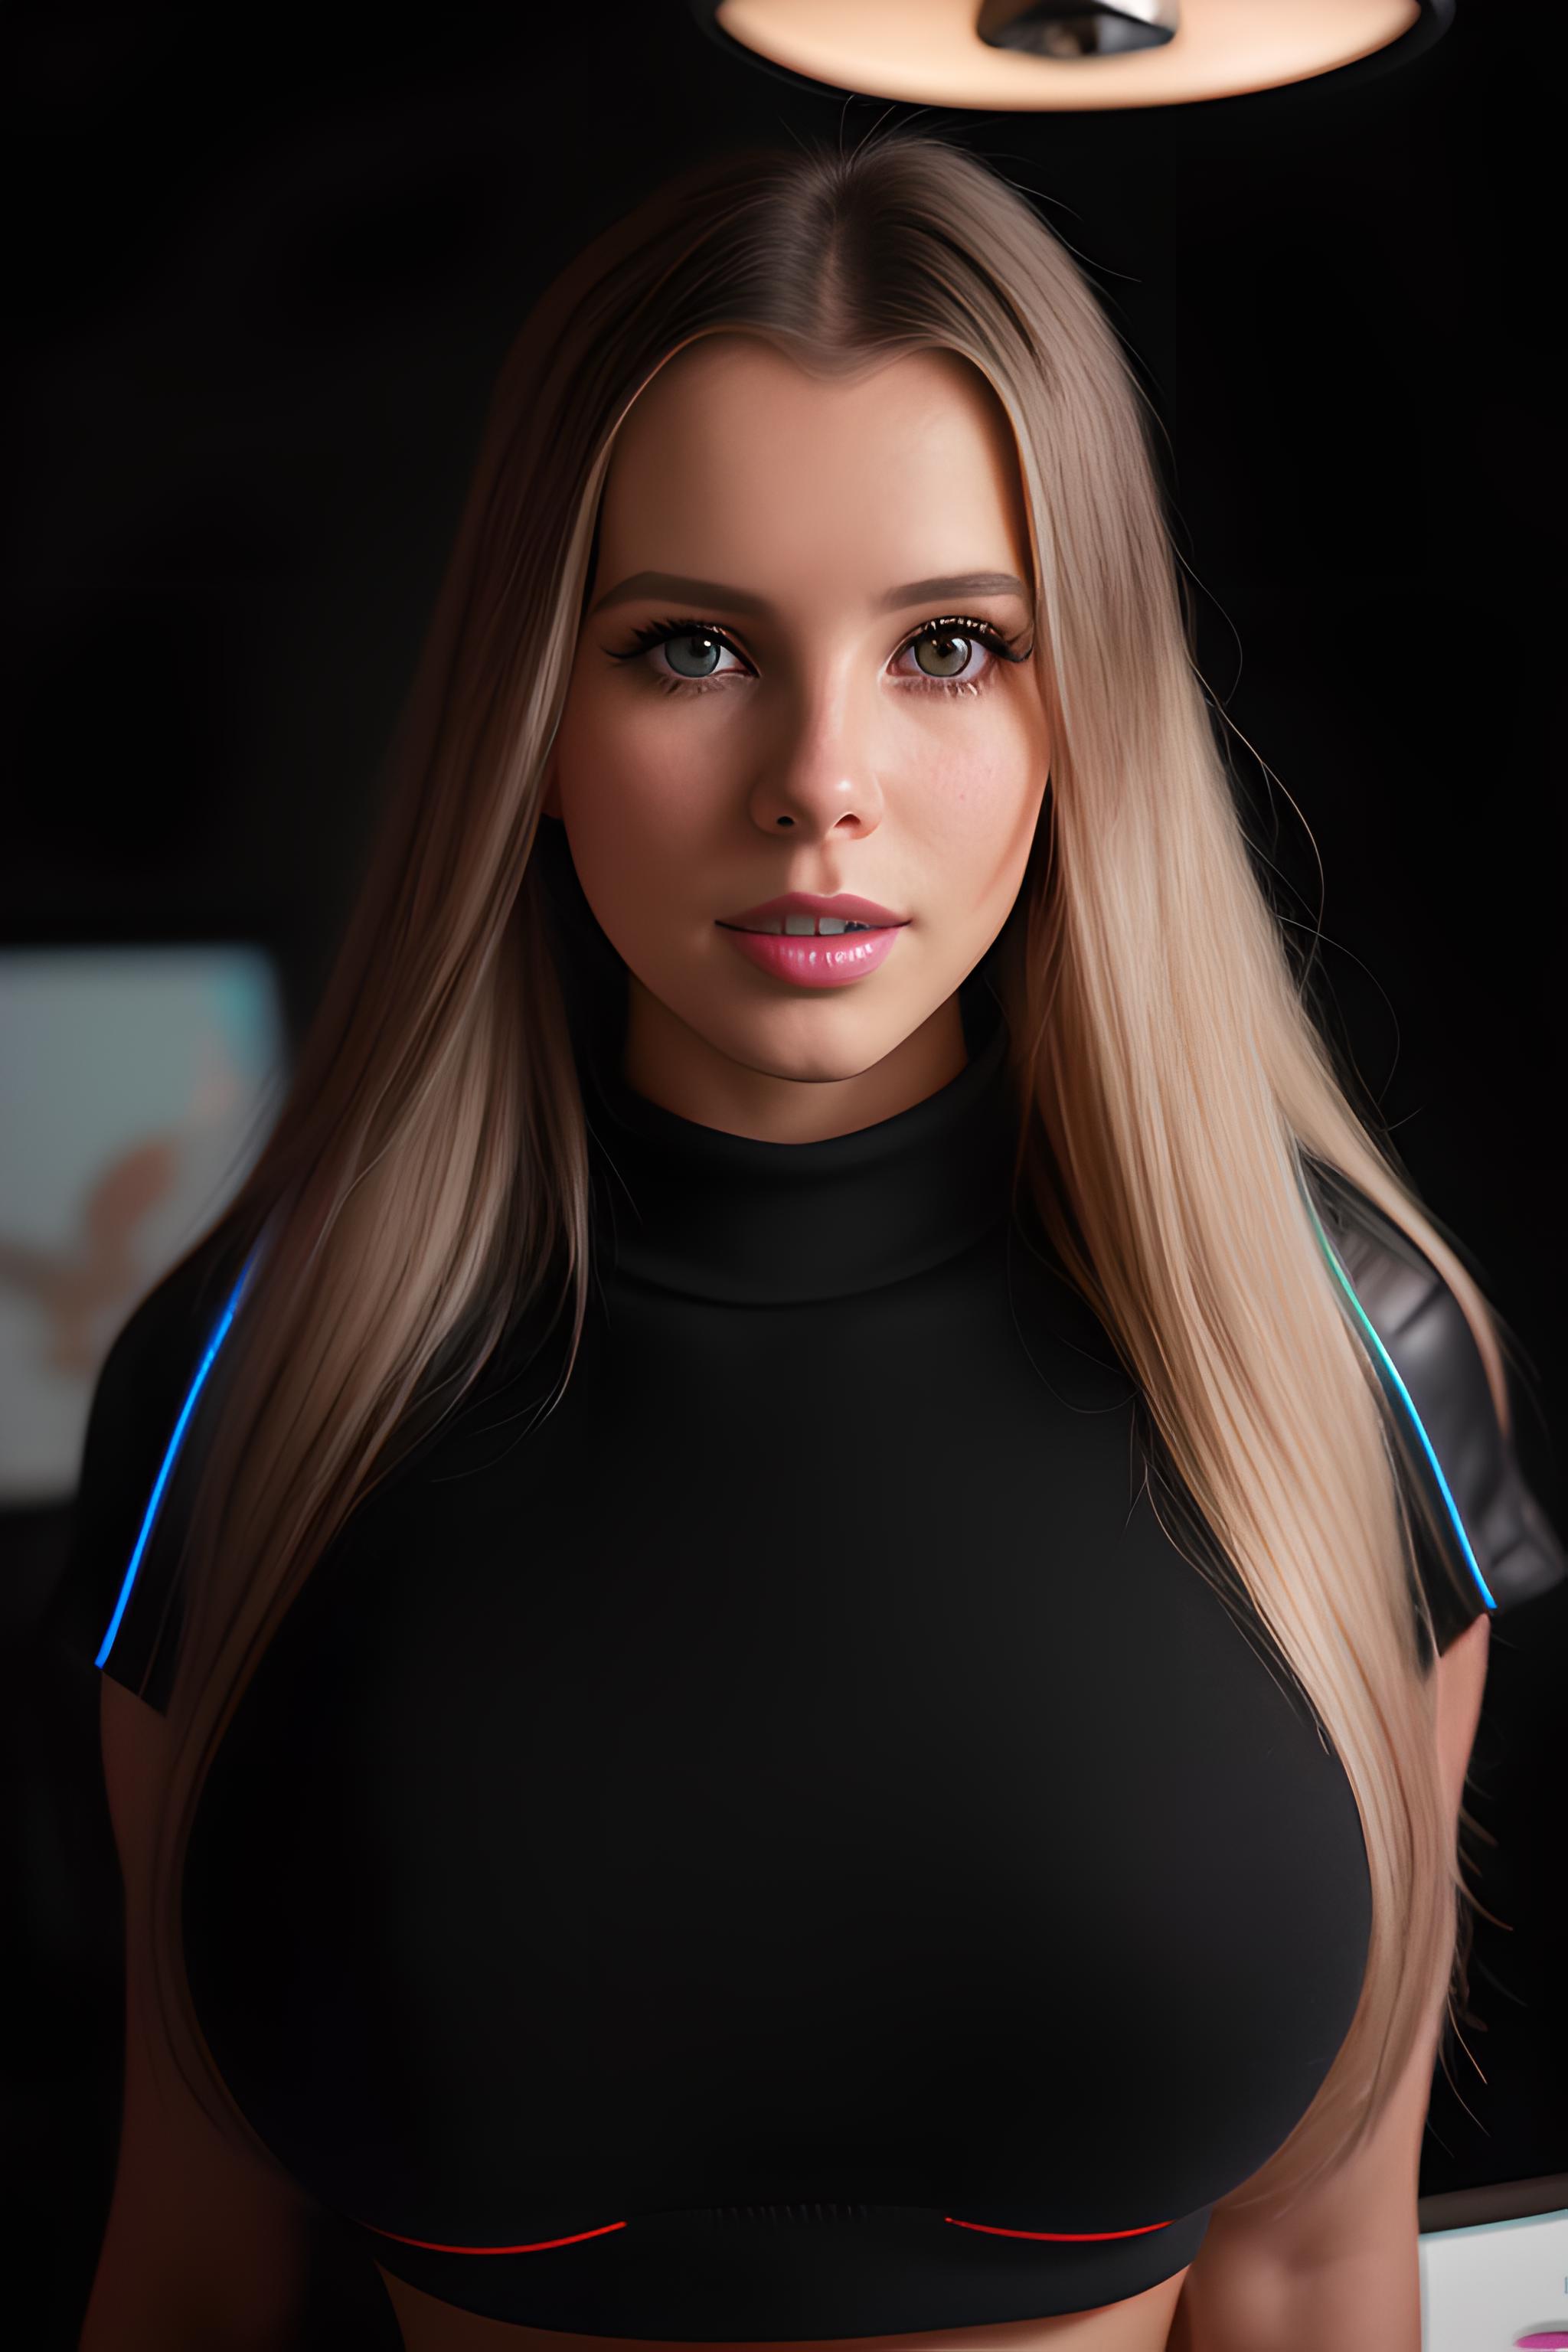 AI model image by ElizaPottinger